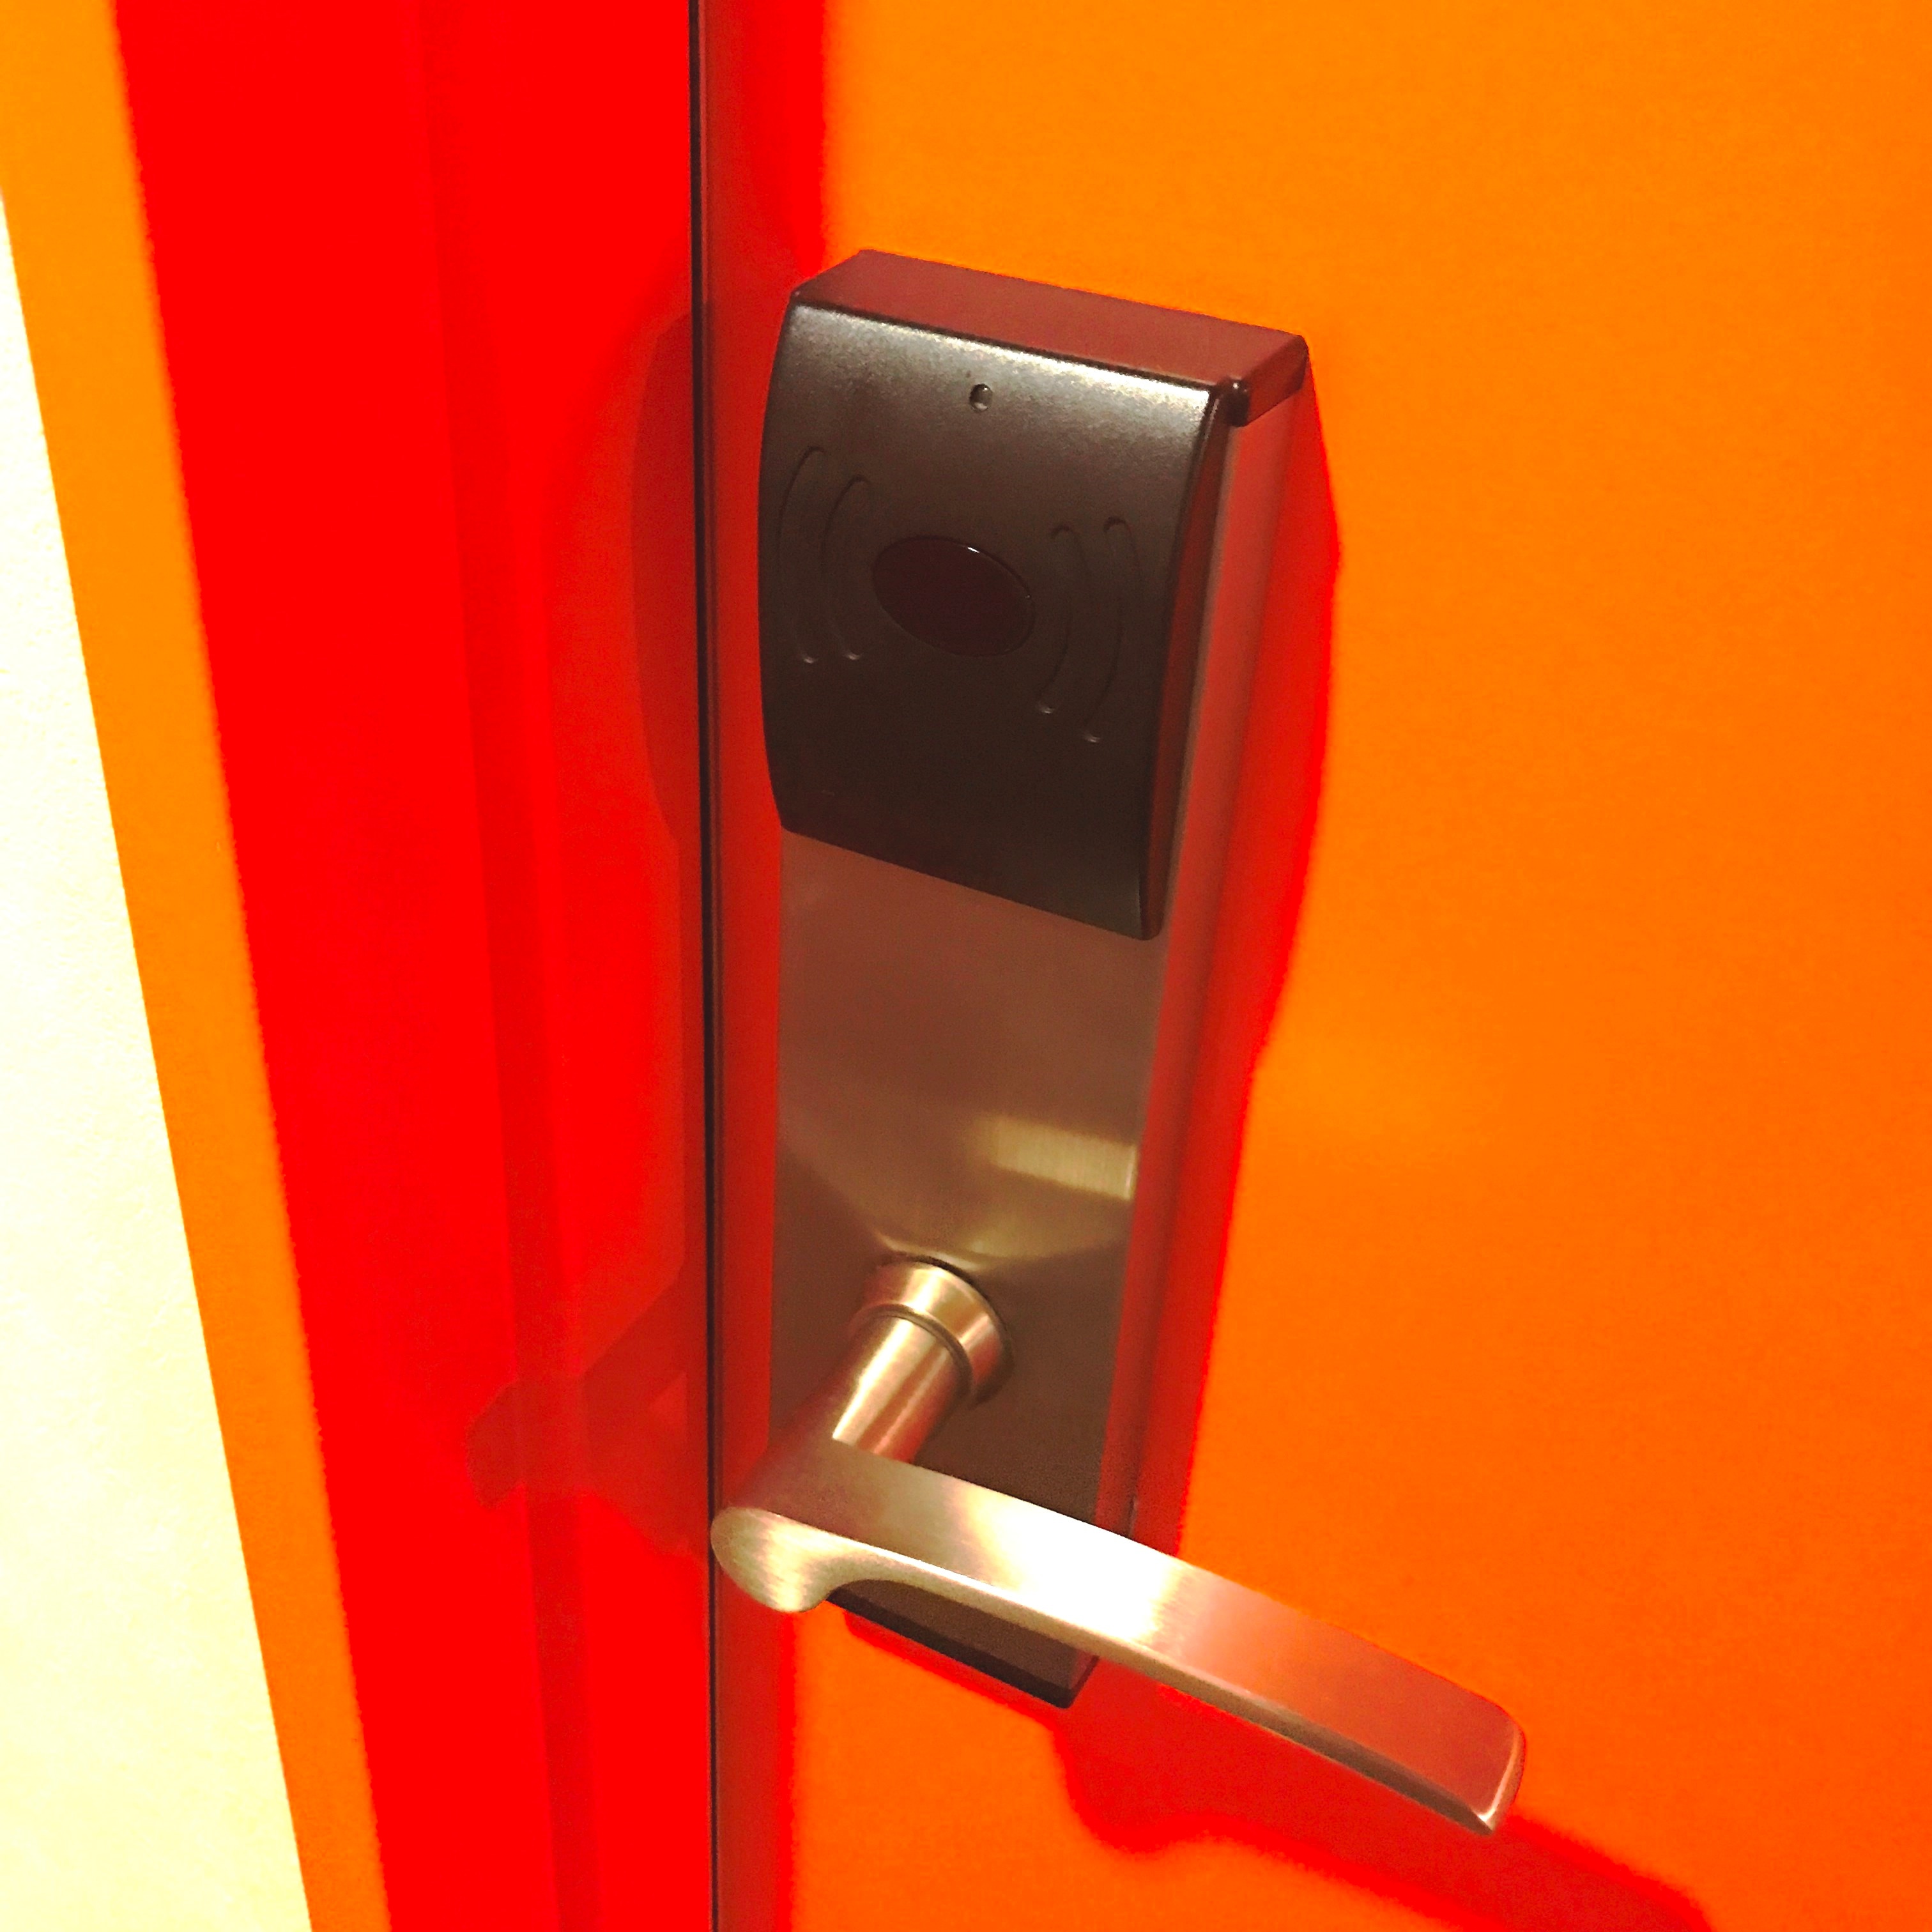 ◆ 客房門 ◆ 將客房卡鑰匙放在門鎖上即可開鎖。這是一個自動鎖。